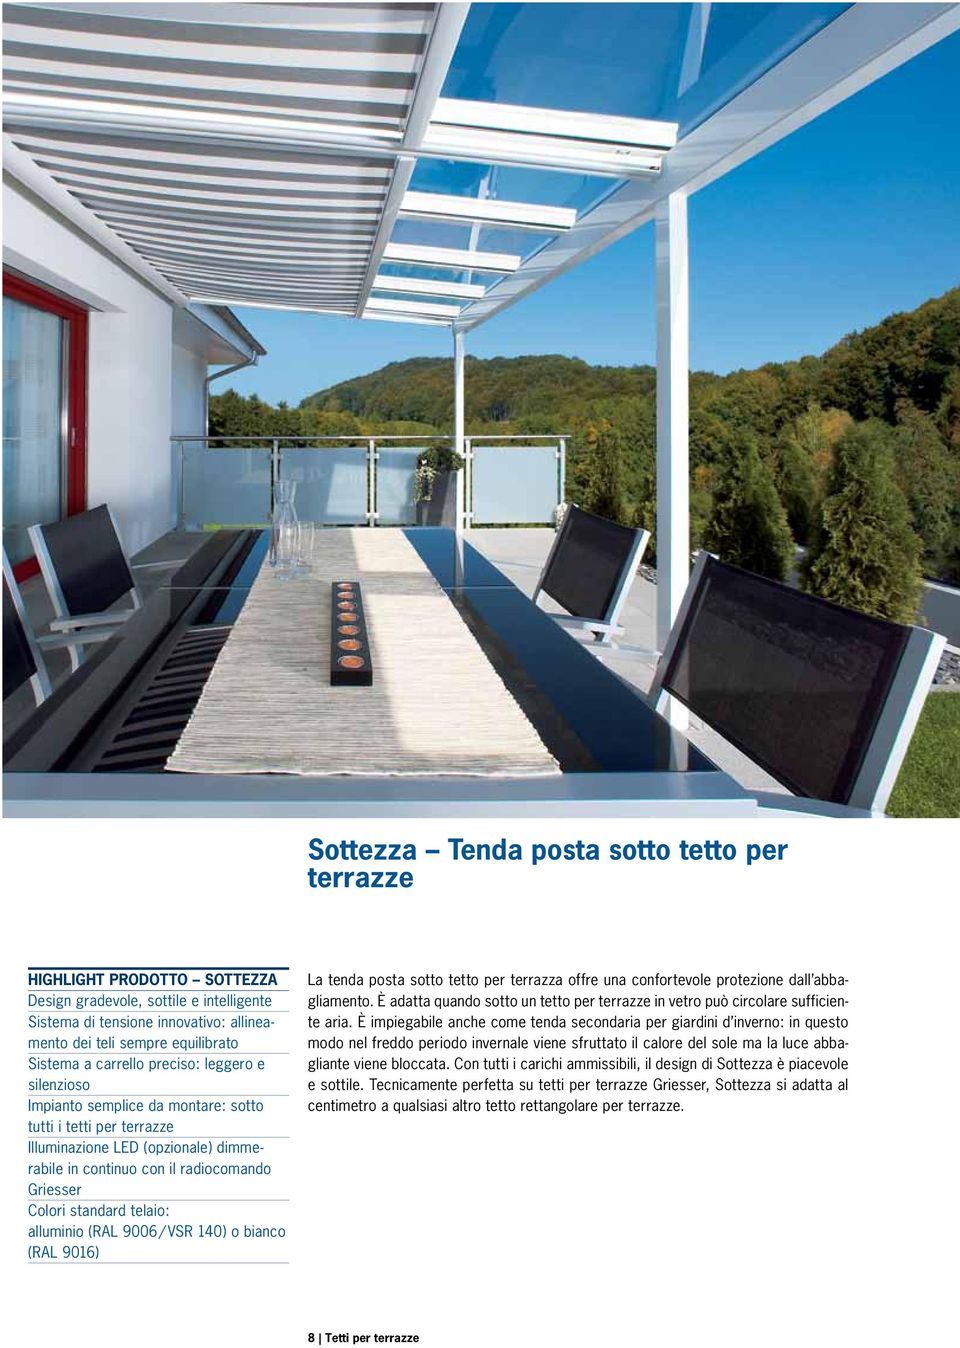 standard telaio: alluminio (RAL 9006 / VSR 140) o bianco (RAL 9016) La tenda posta sotto tetto per terrazza offre una confortevole protezione dall abbagliamento.